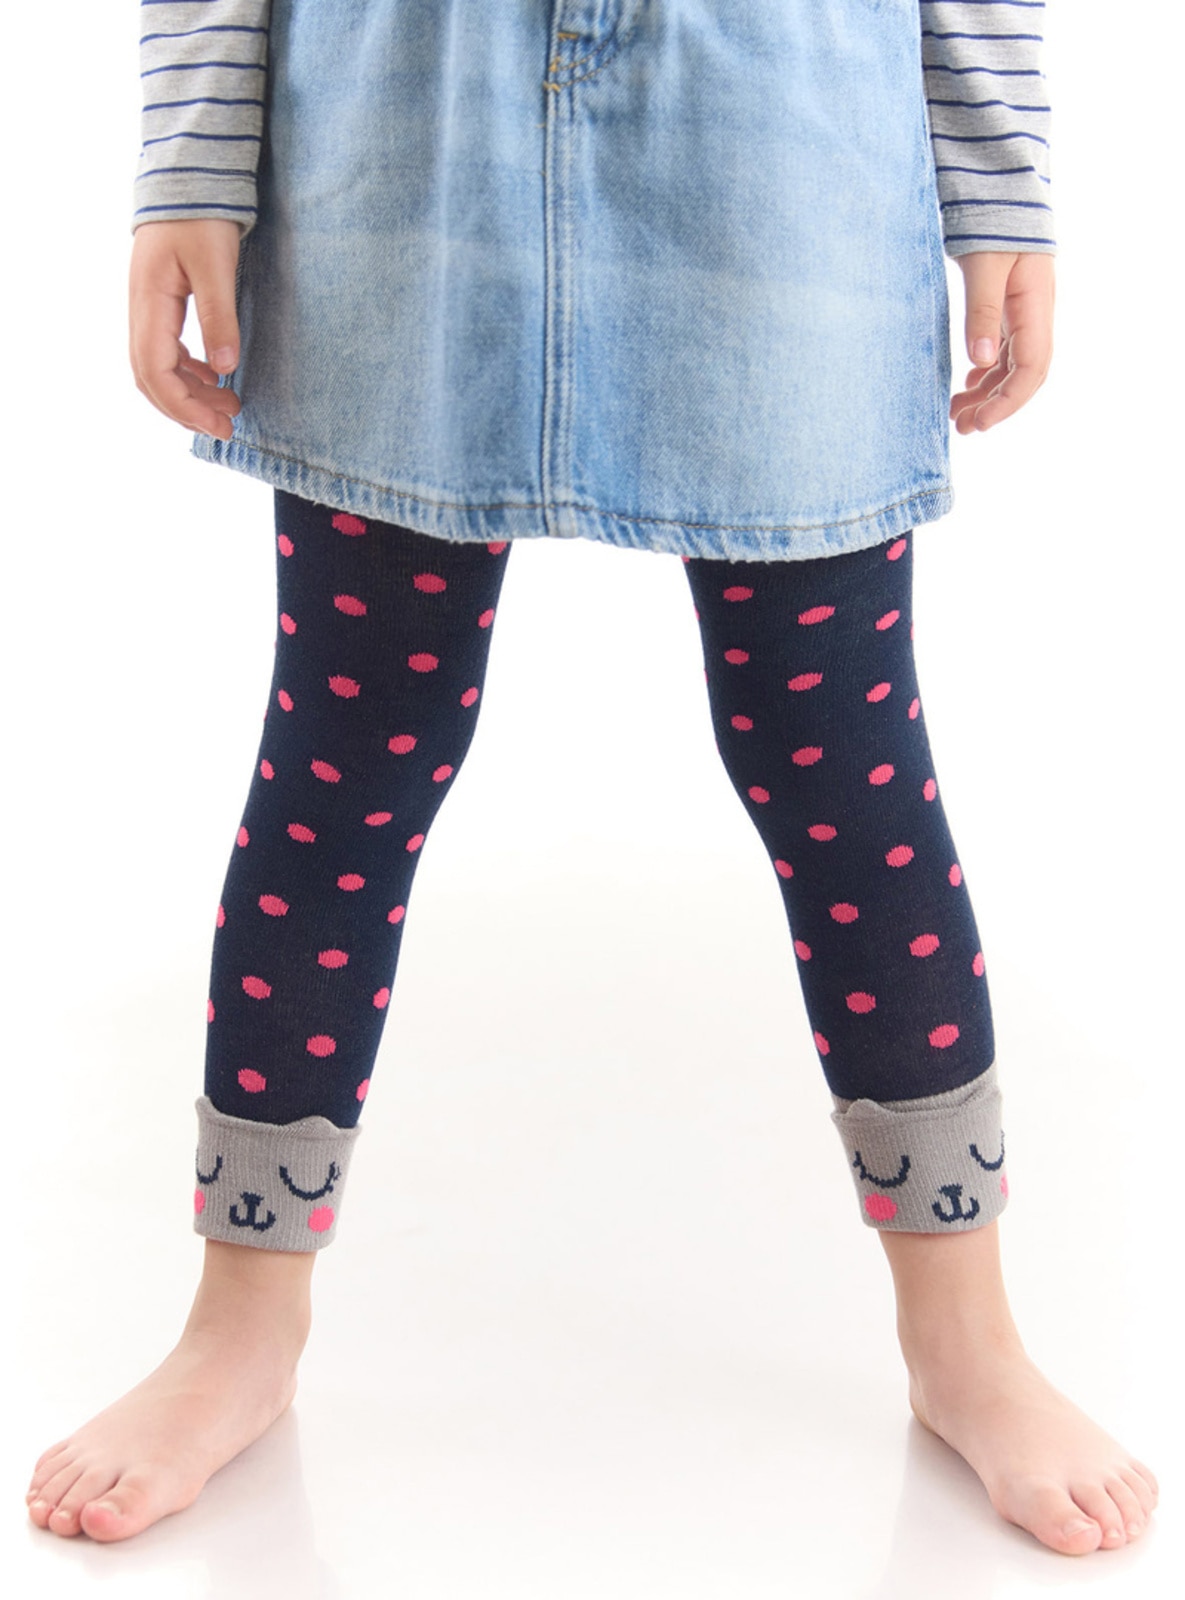 Cat Polka Dot Girl's Socks Tights